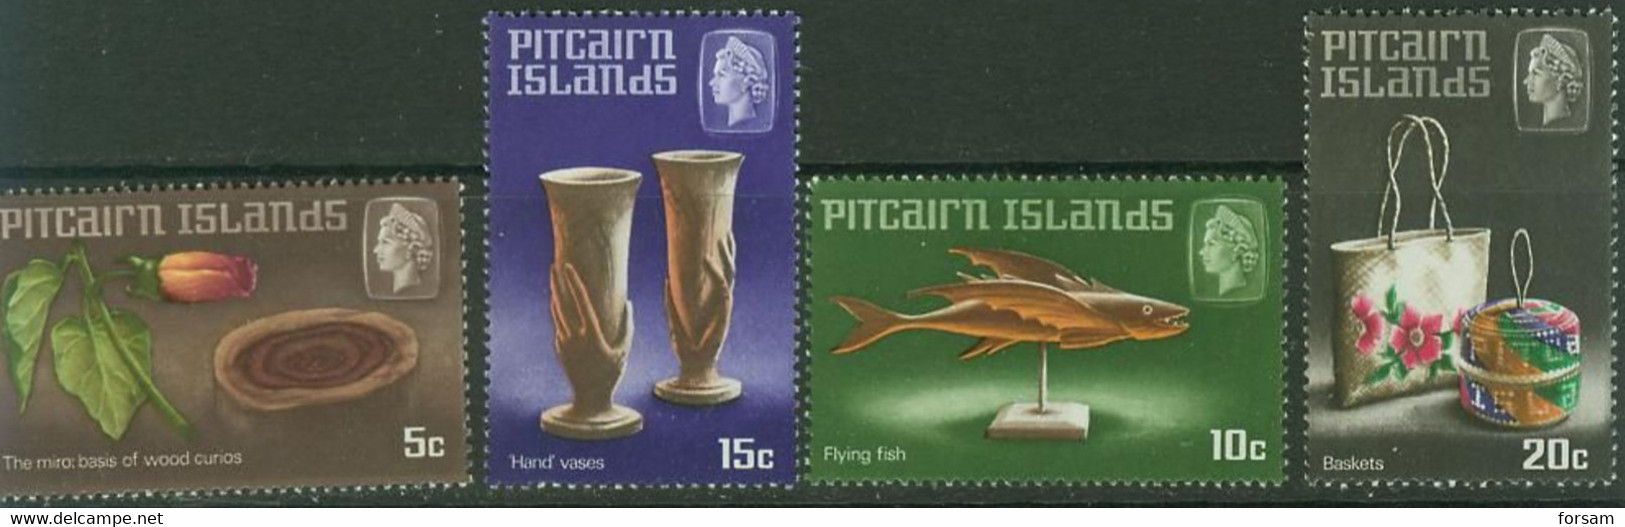 PITCAIRN ISLANDS..1968..Michel # 91-94...MNH...MiCV - 5 Euro. - Pitcairn Islands